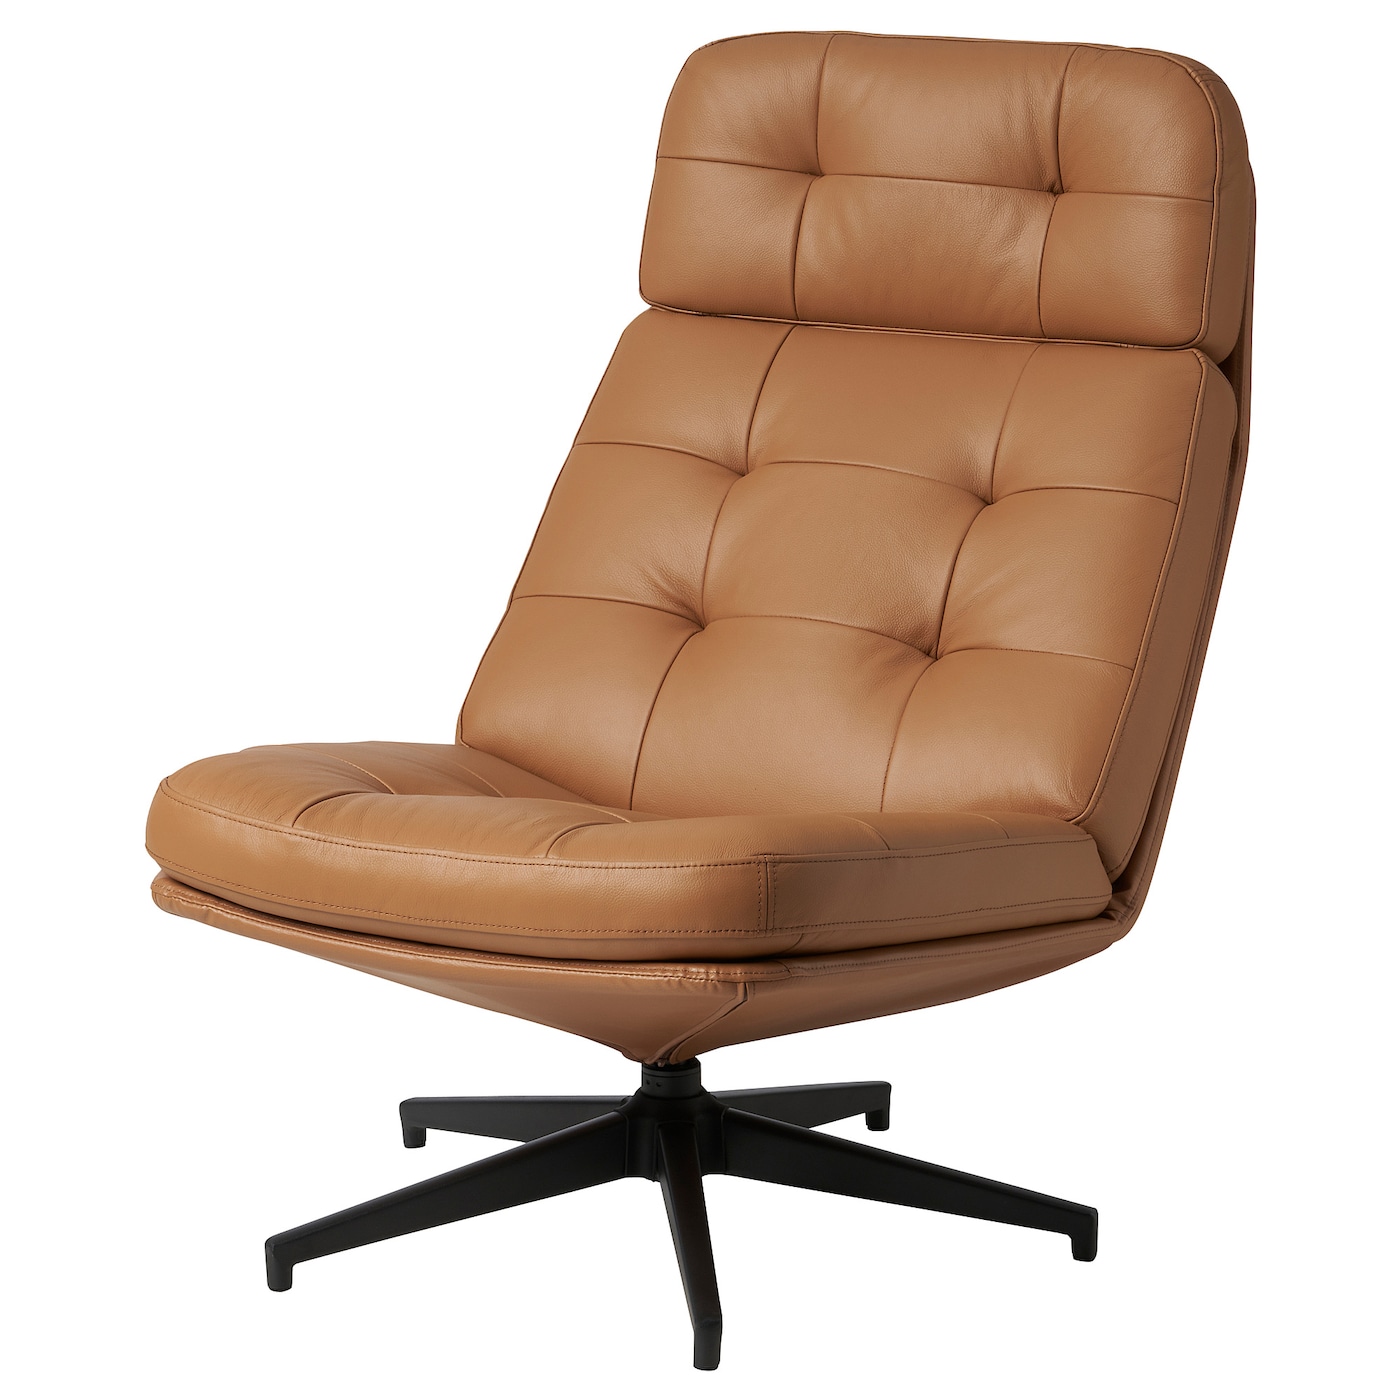 ХАВБЕРГ Вращающееся кресло, Гранн/Бомстад золотисто-коричневый HAVBERG IKEA офисное кресло компьютерное кресло вращающееся кресло для босса многофункциональное бытовое кресло для геймеров с функцией массажа